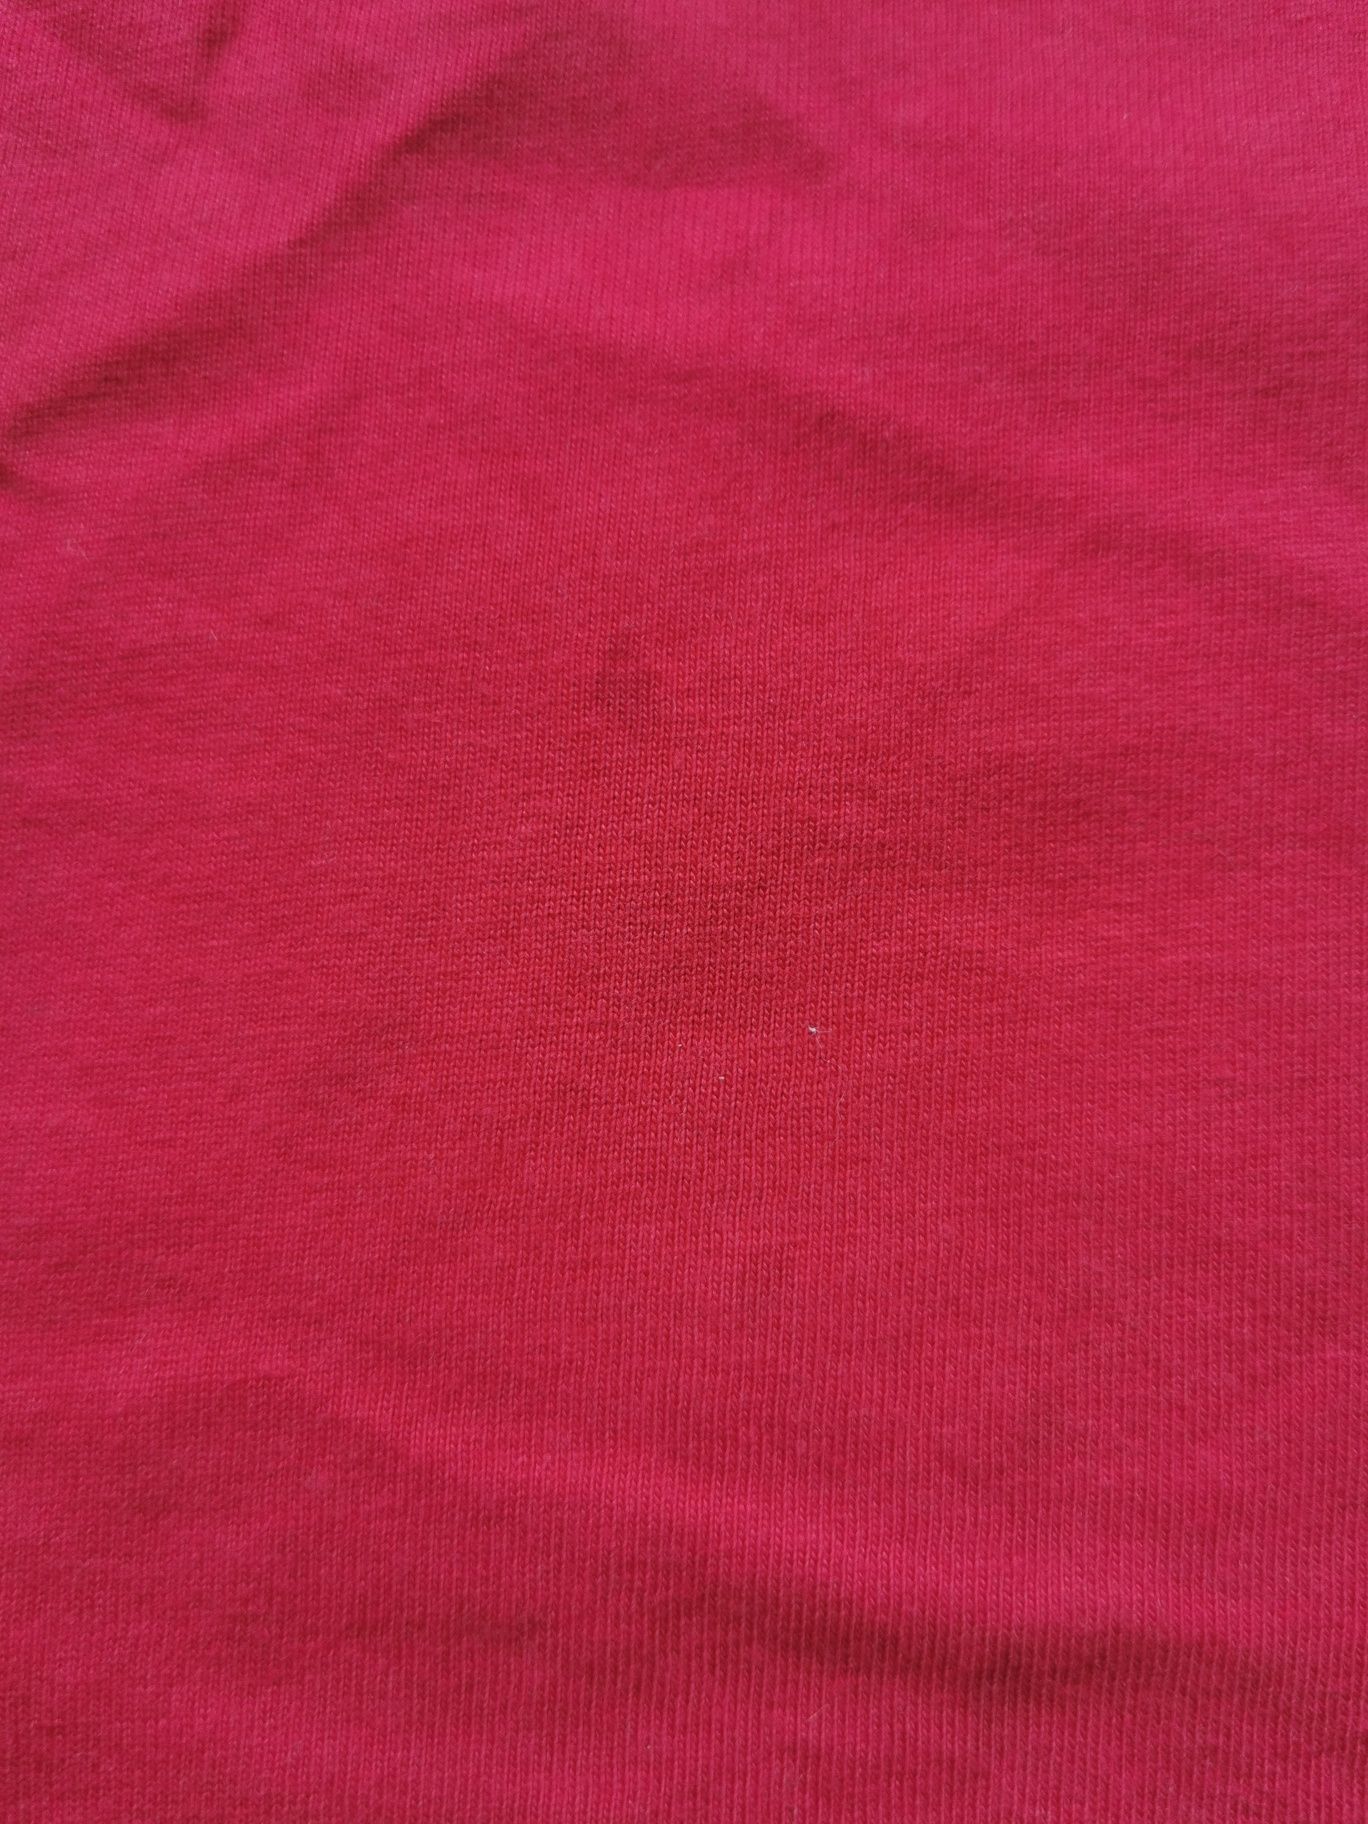 Czerwona koszula t-shirt, rozmiar 140 cm